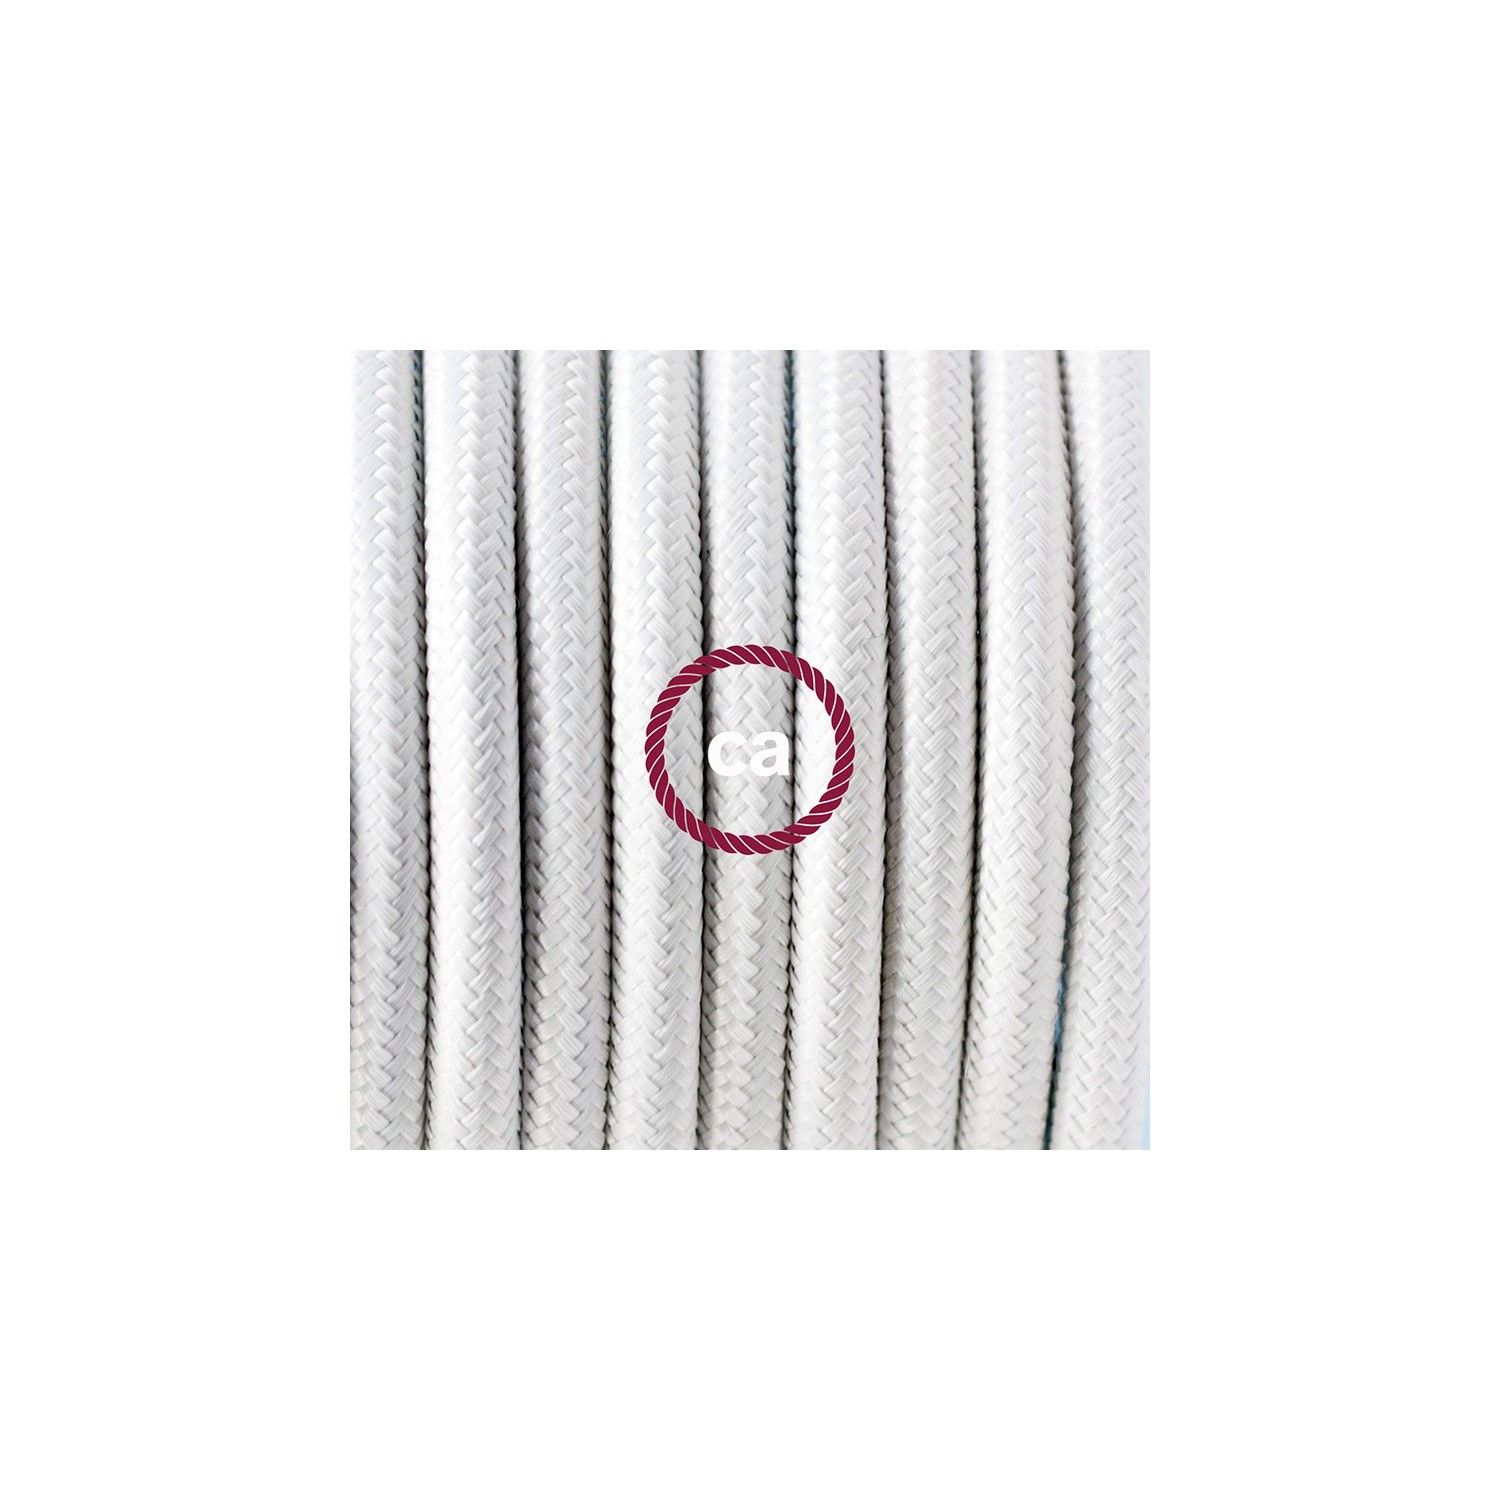 Ronde flexibele textielkabel van viscose met schakelaar en stekker. RM01 - wit1,80 m.